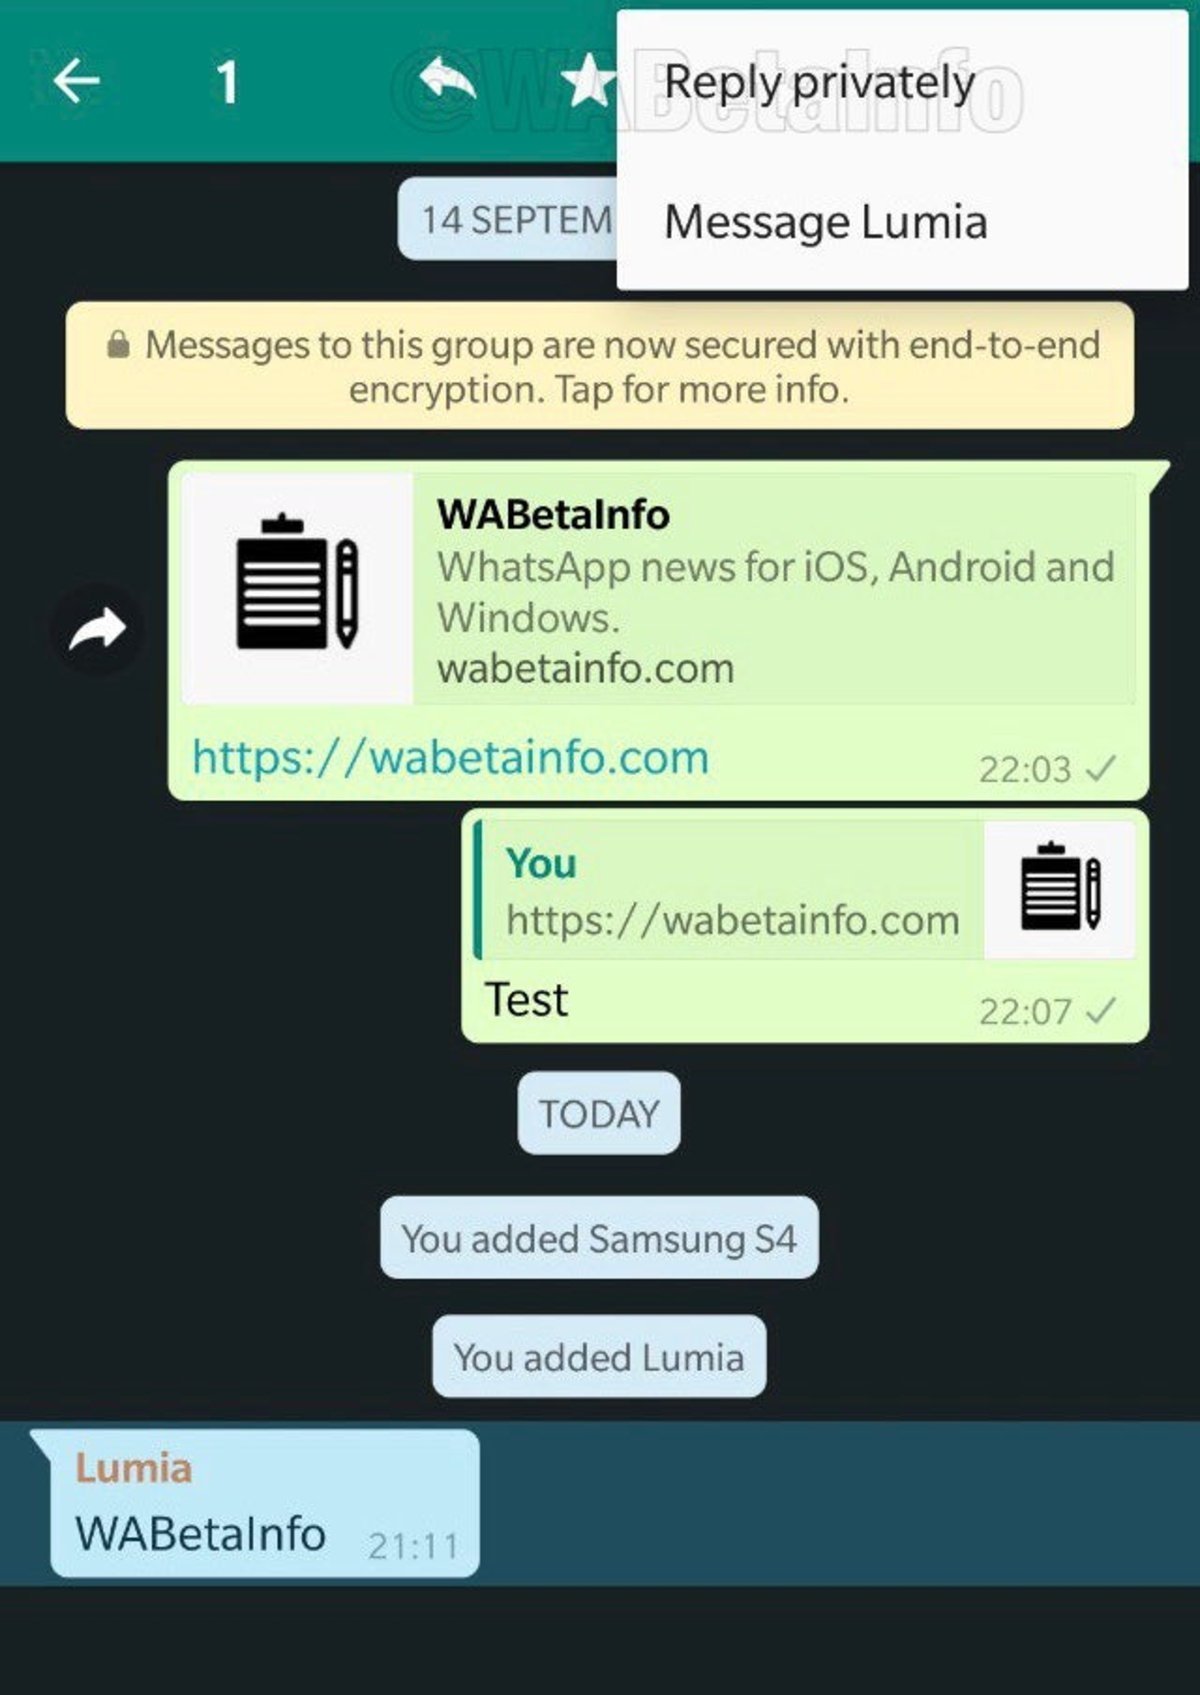 Responder de forma privada un mensaje recibido en un grupo en WhatsApp